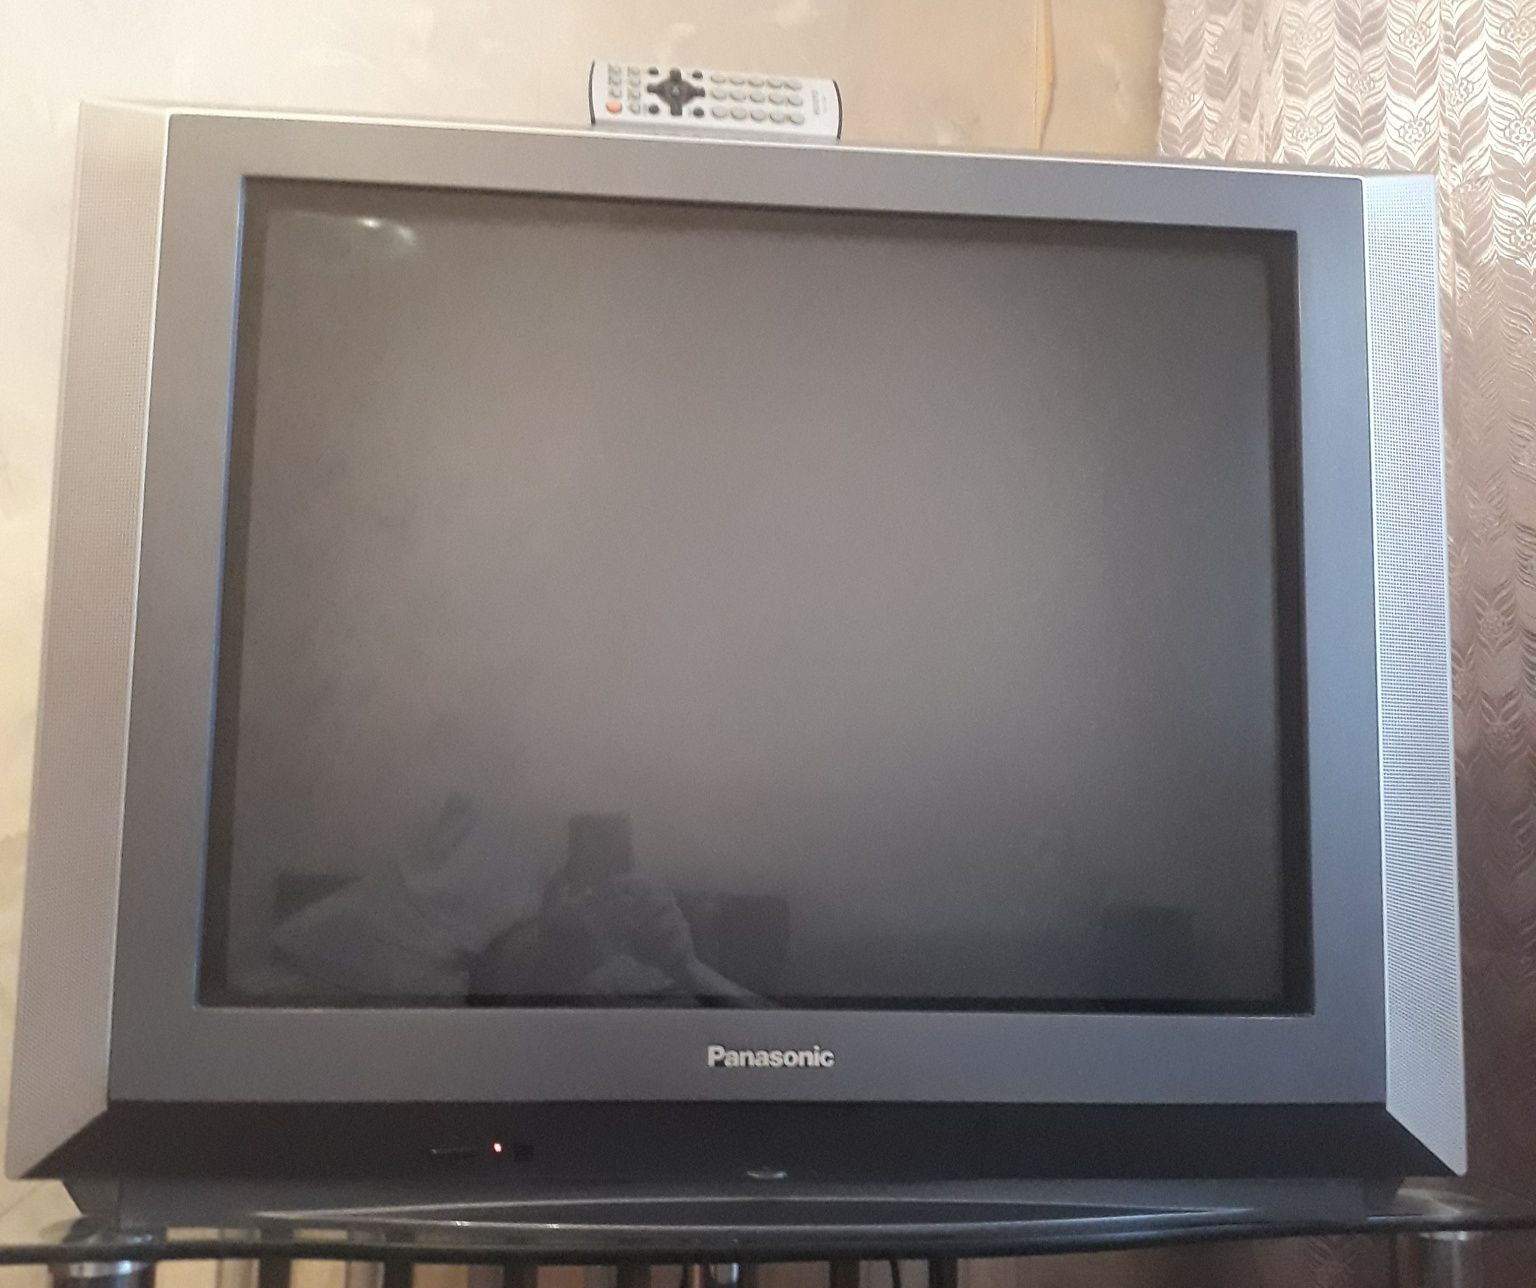 Телевизор в хорошем состоянии, фирма Panasonic. Яркое изображение